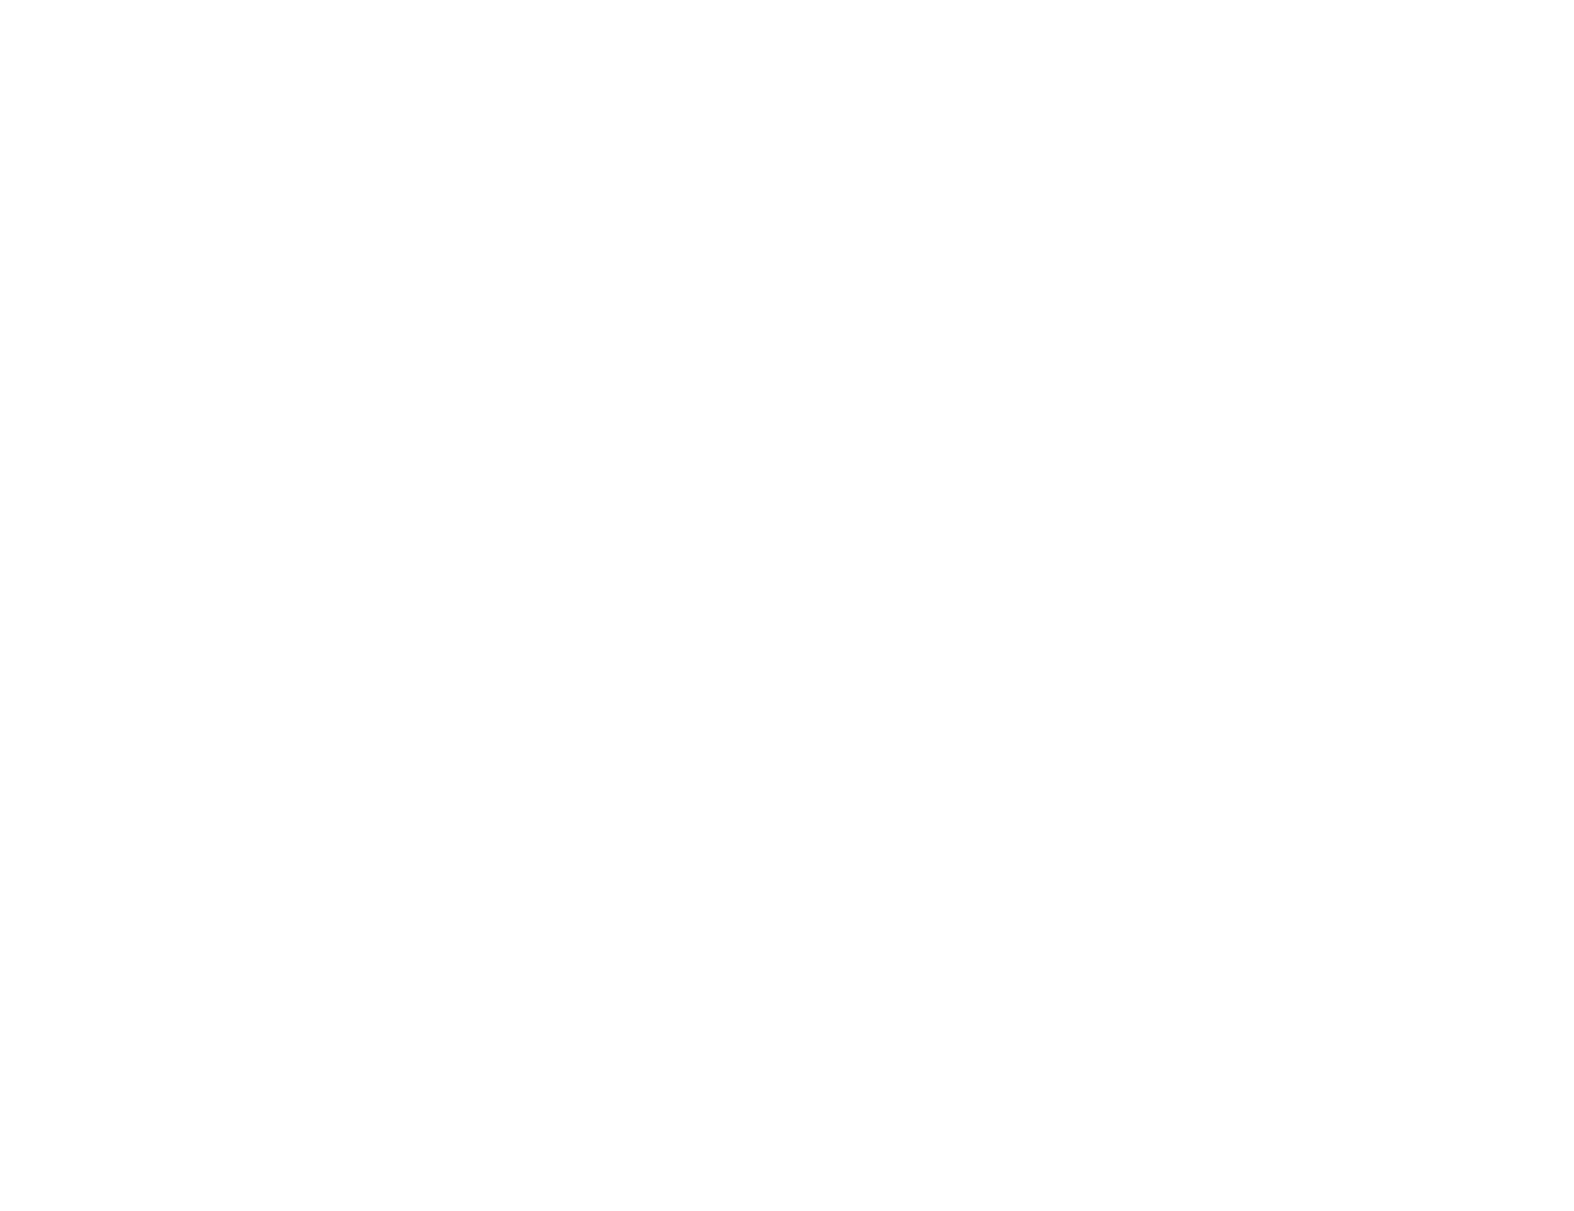 International Games System logo for dark backgrounds (transparent PNG)